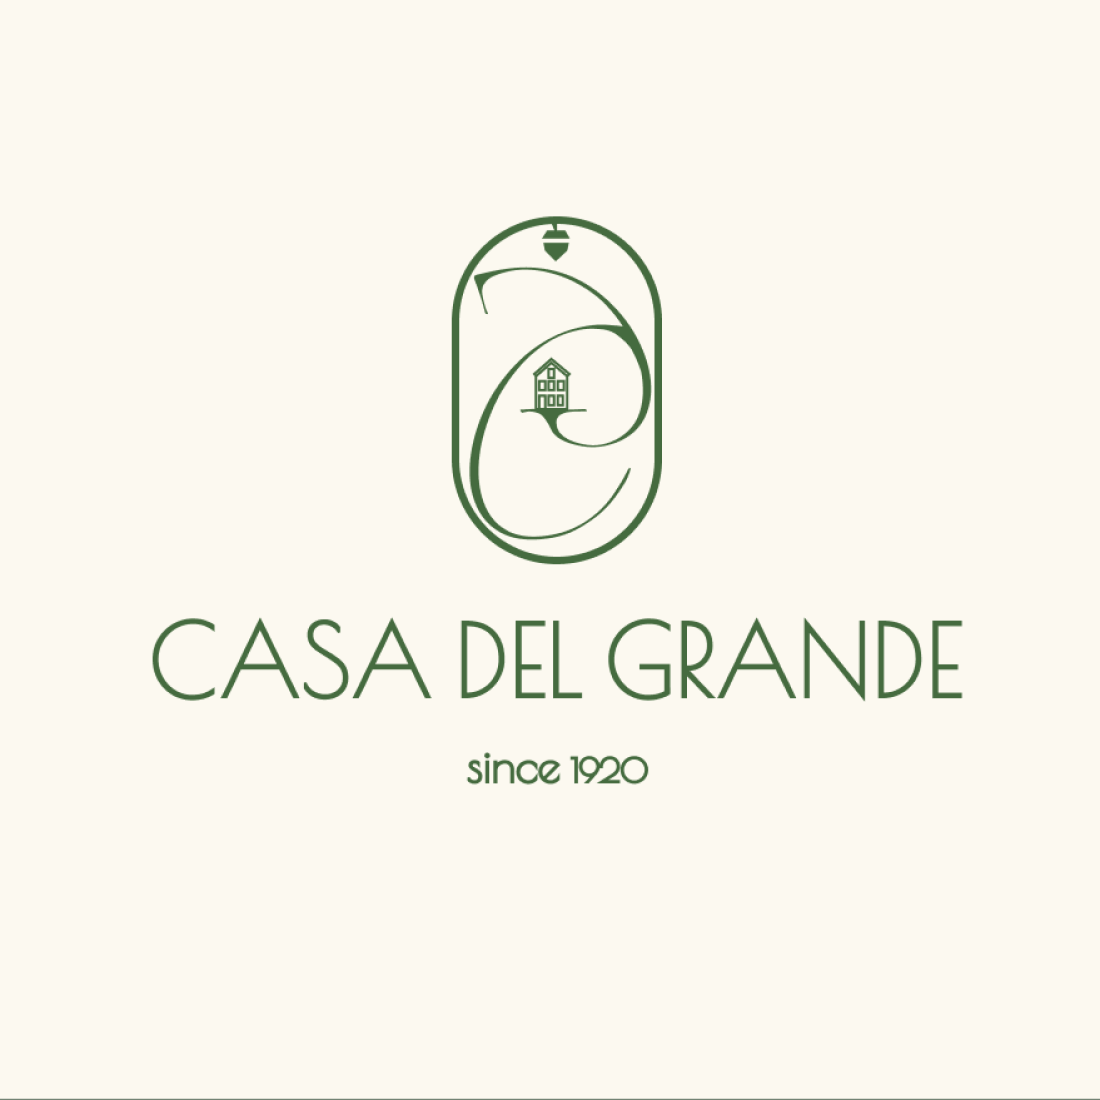 Elegant logo design in green color preview image.